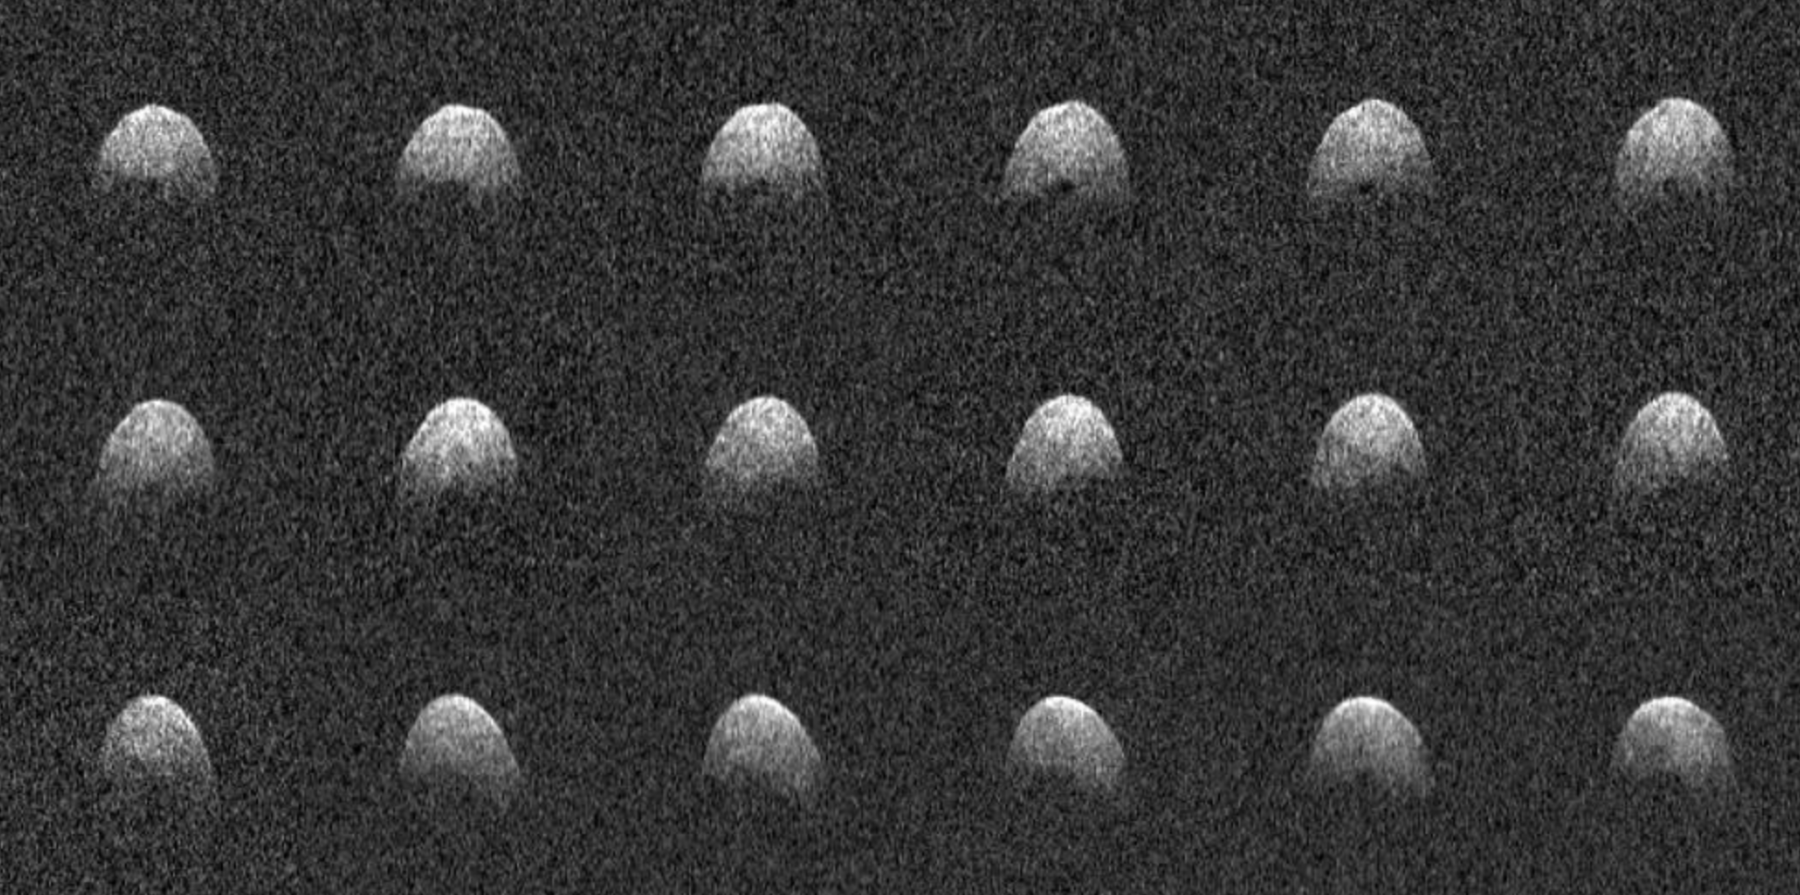 Загадочный хвостатый астероид Фаэтон стал еще более странным